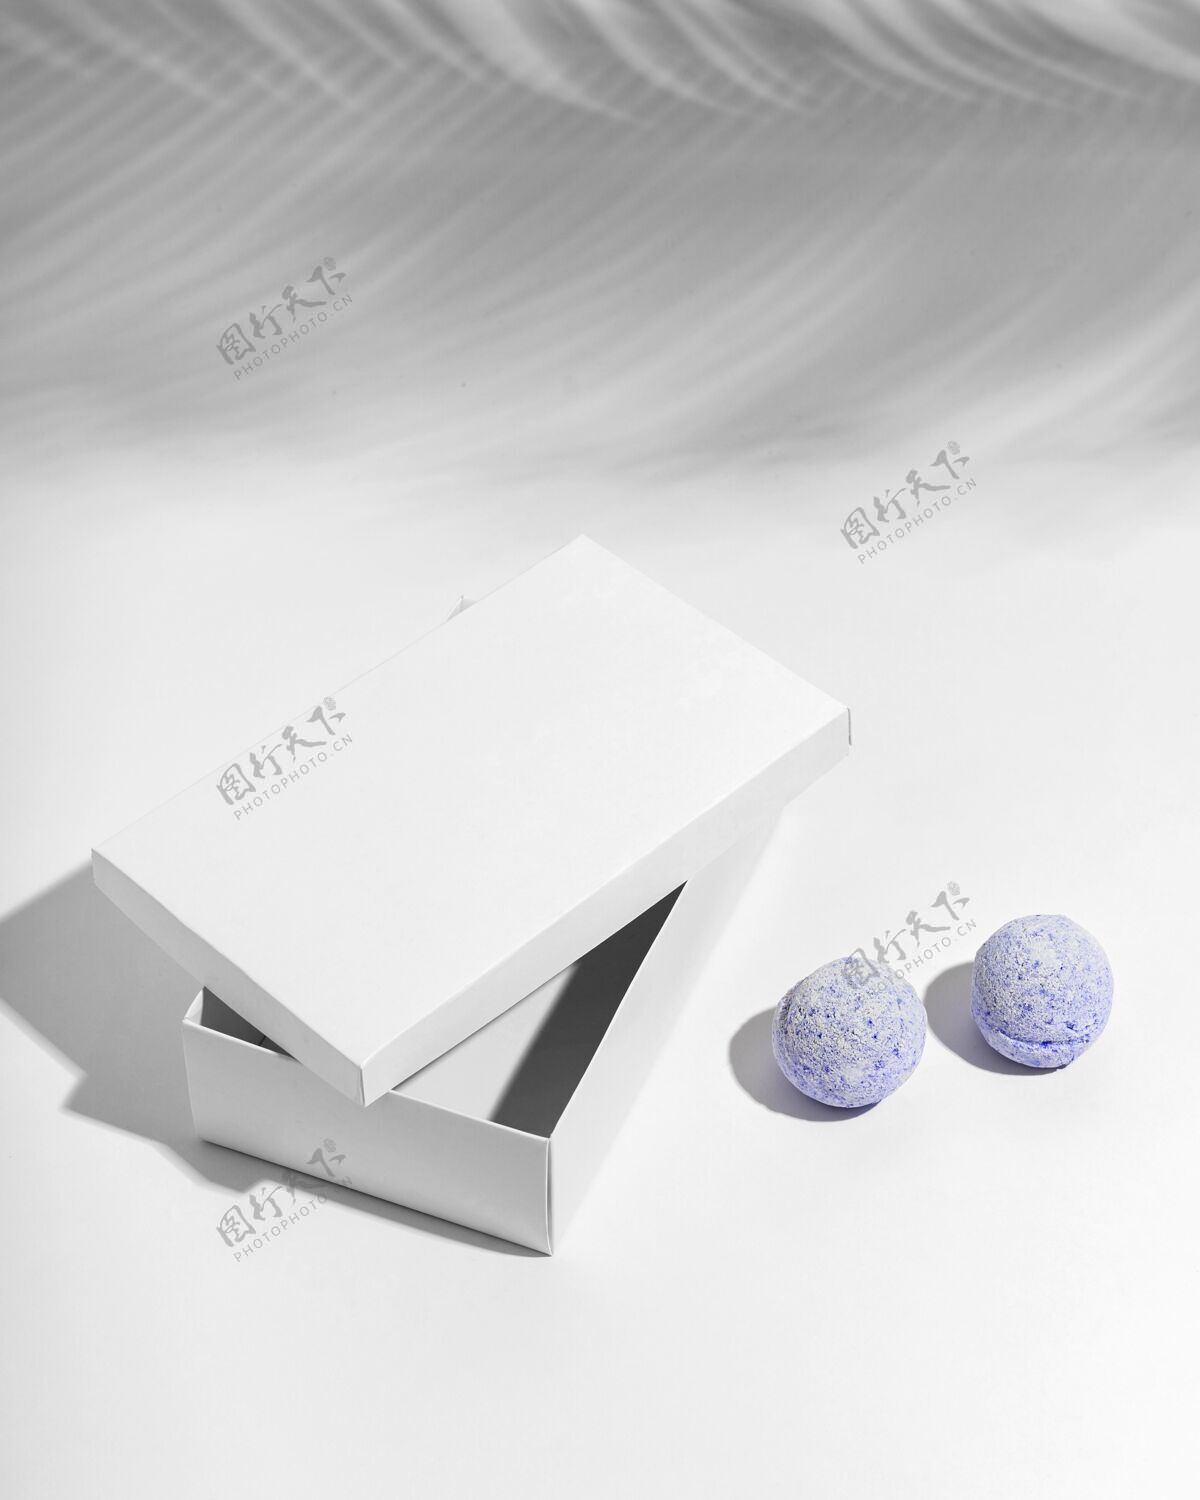 沐浴高角度紫色浴弹和蓝色盒子品牌分类水疗